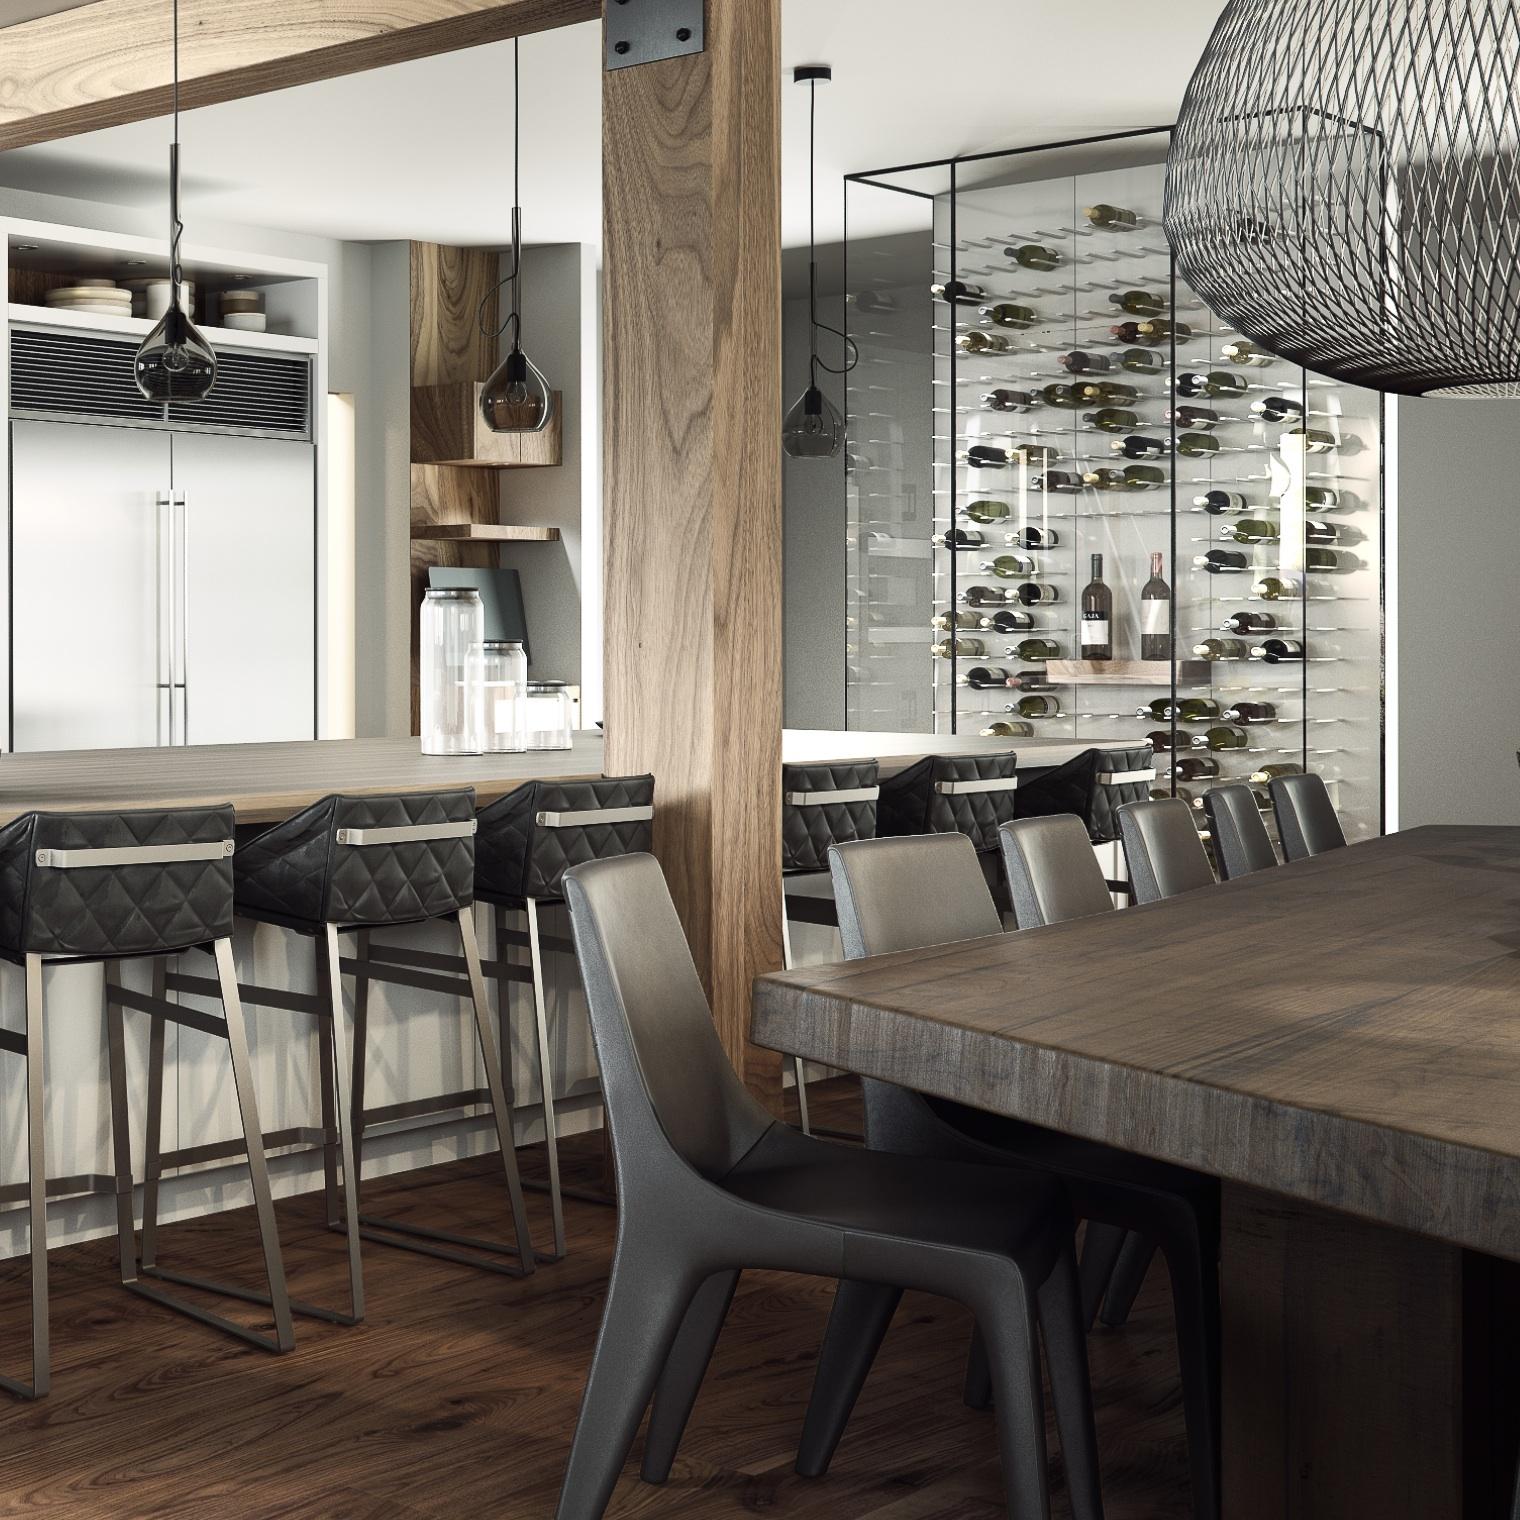 Küche mit weinraum #küche #weinregal #innenarchitektur #modulsystem #weinaufbewahrung ©STACT weinregal